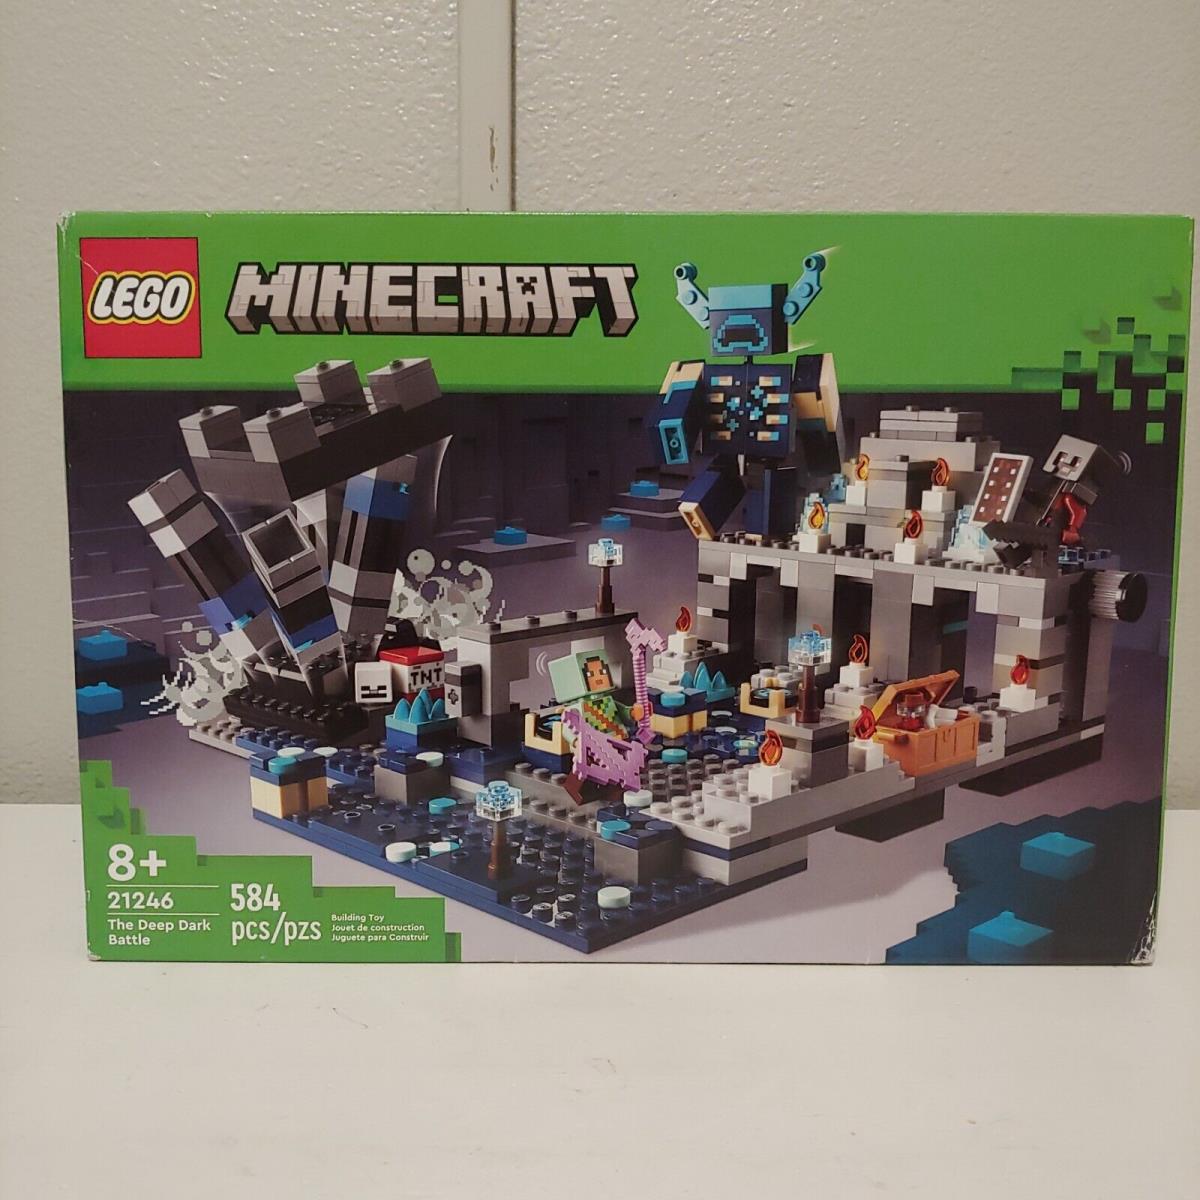 Lego Minecraft The Deep Dark Battle Set 21246 Biome Adventure Toy Ages 8+